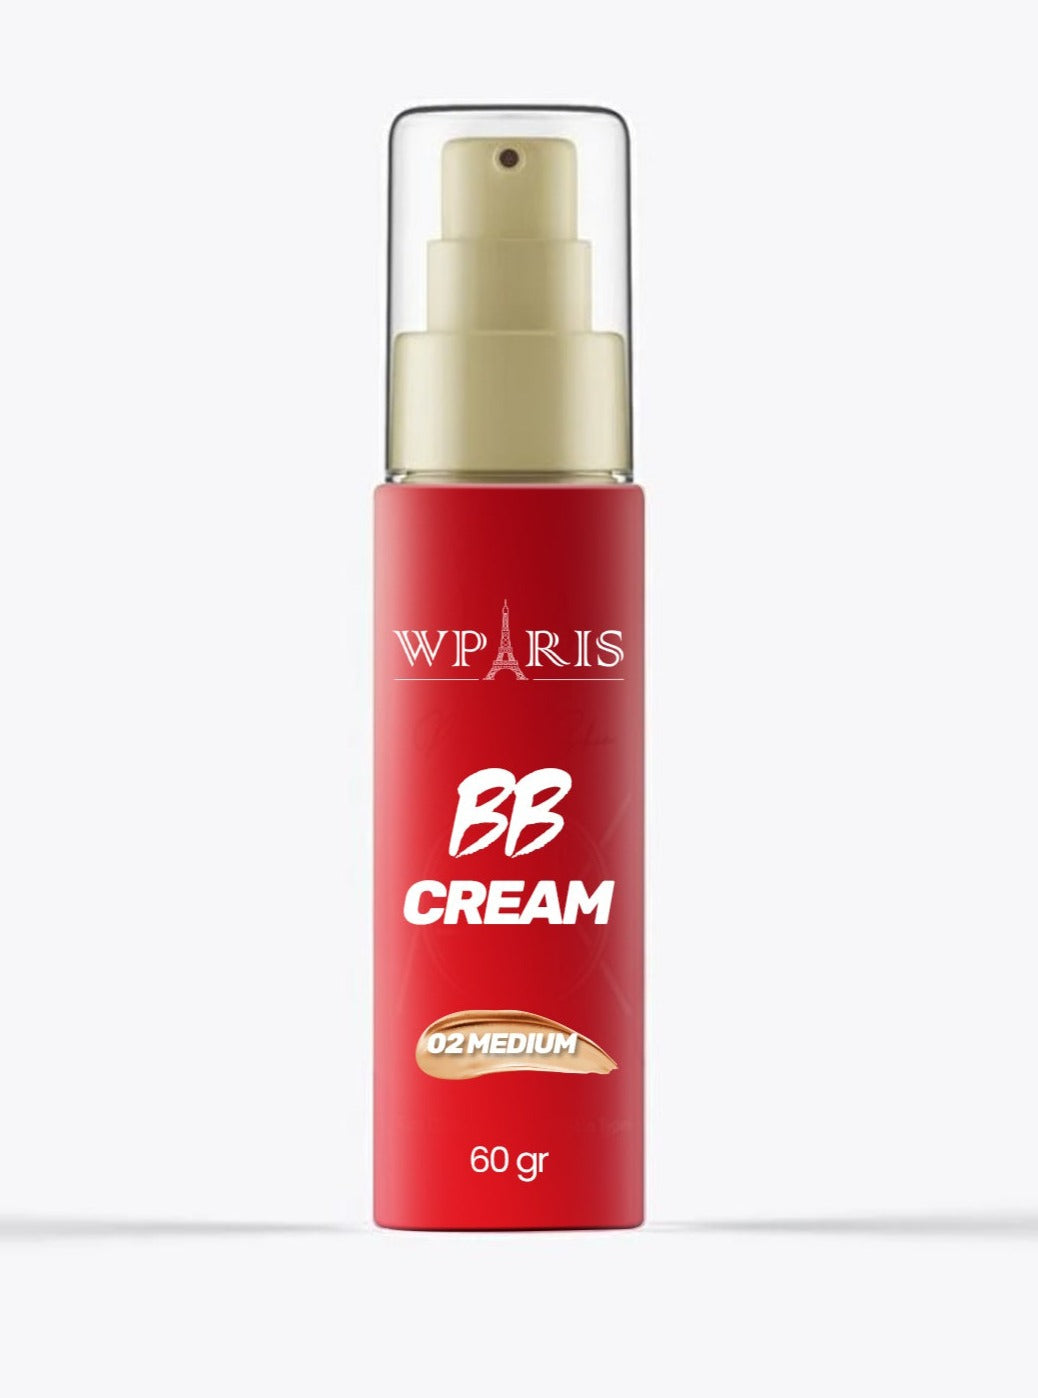 WParis BB Cream Натуральный консилер с увлажняющим эффектом 60гр